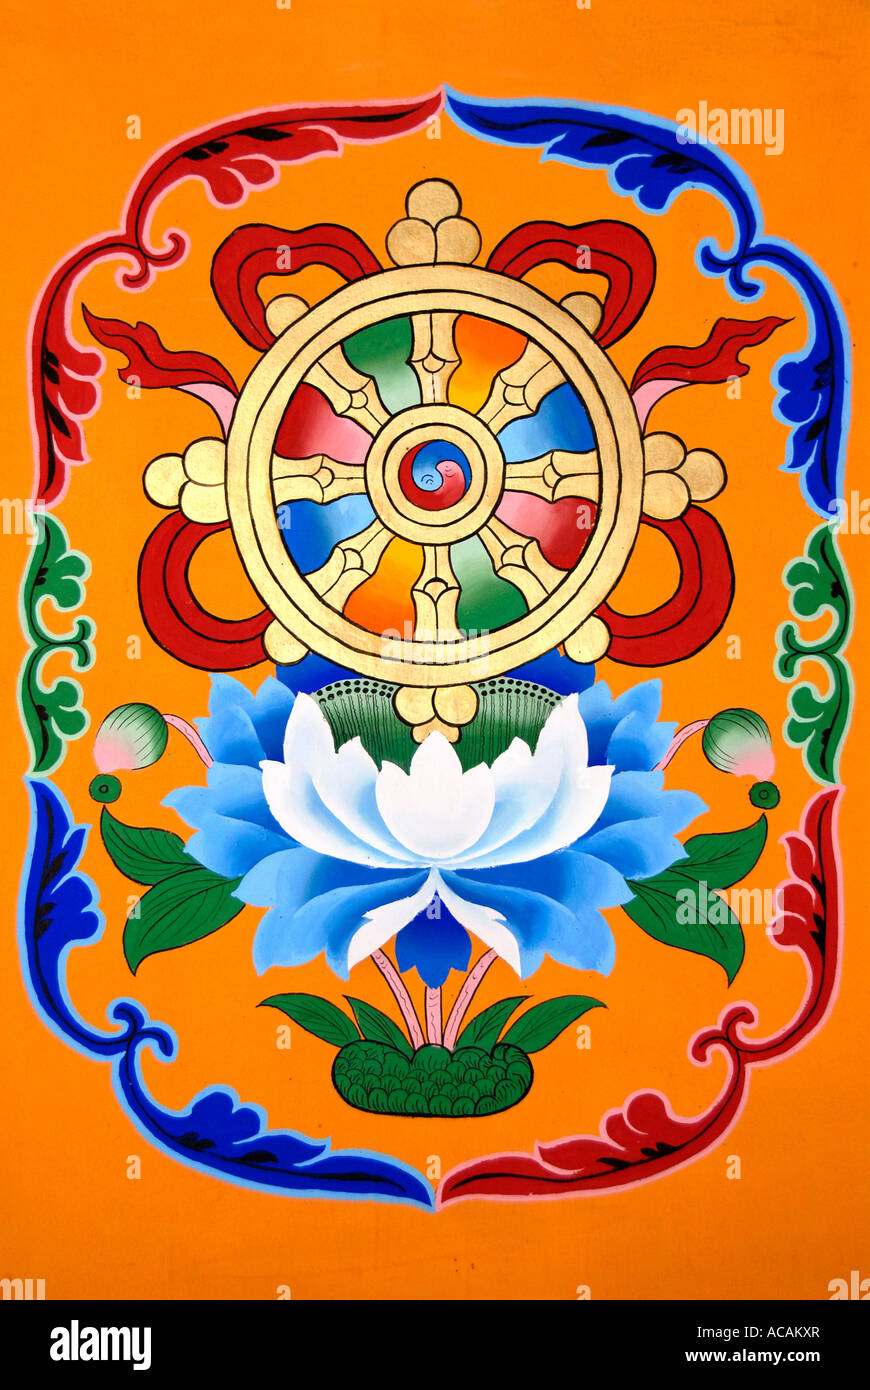 Le bouddhisme tibétain symbole peinture roue de la vie au-dessus de fleur  de lotus Chine Tibet Lhasa Jokhang Photo Stock - Alamy